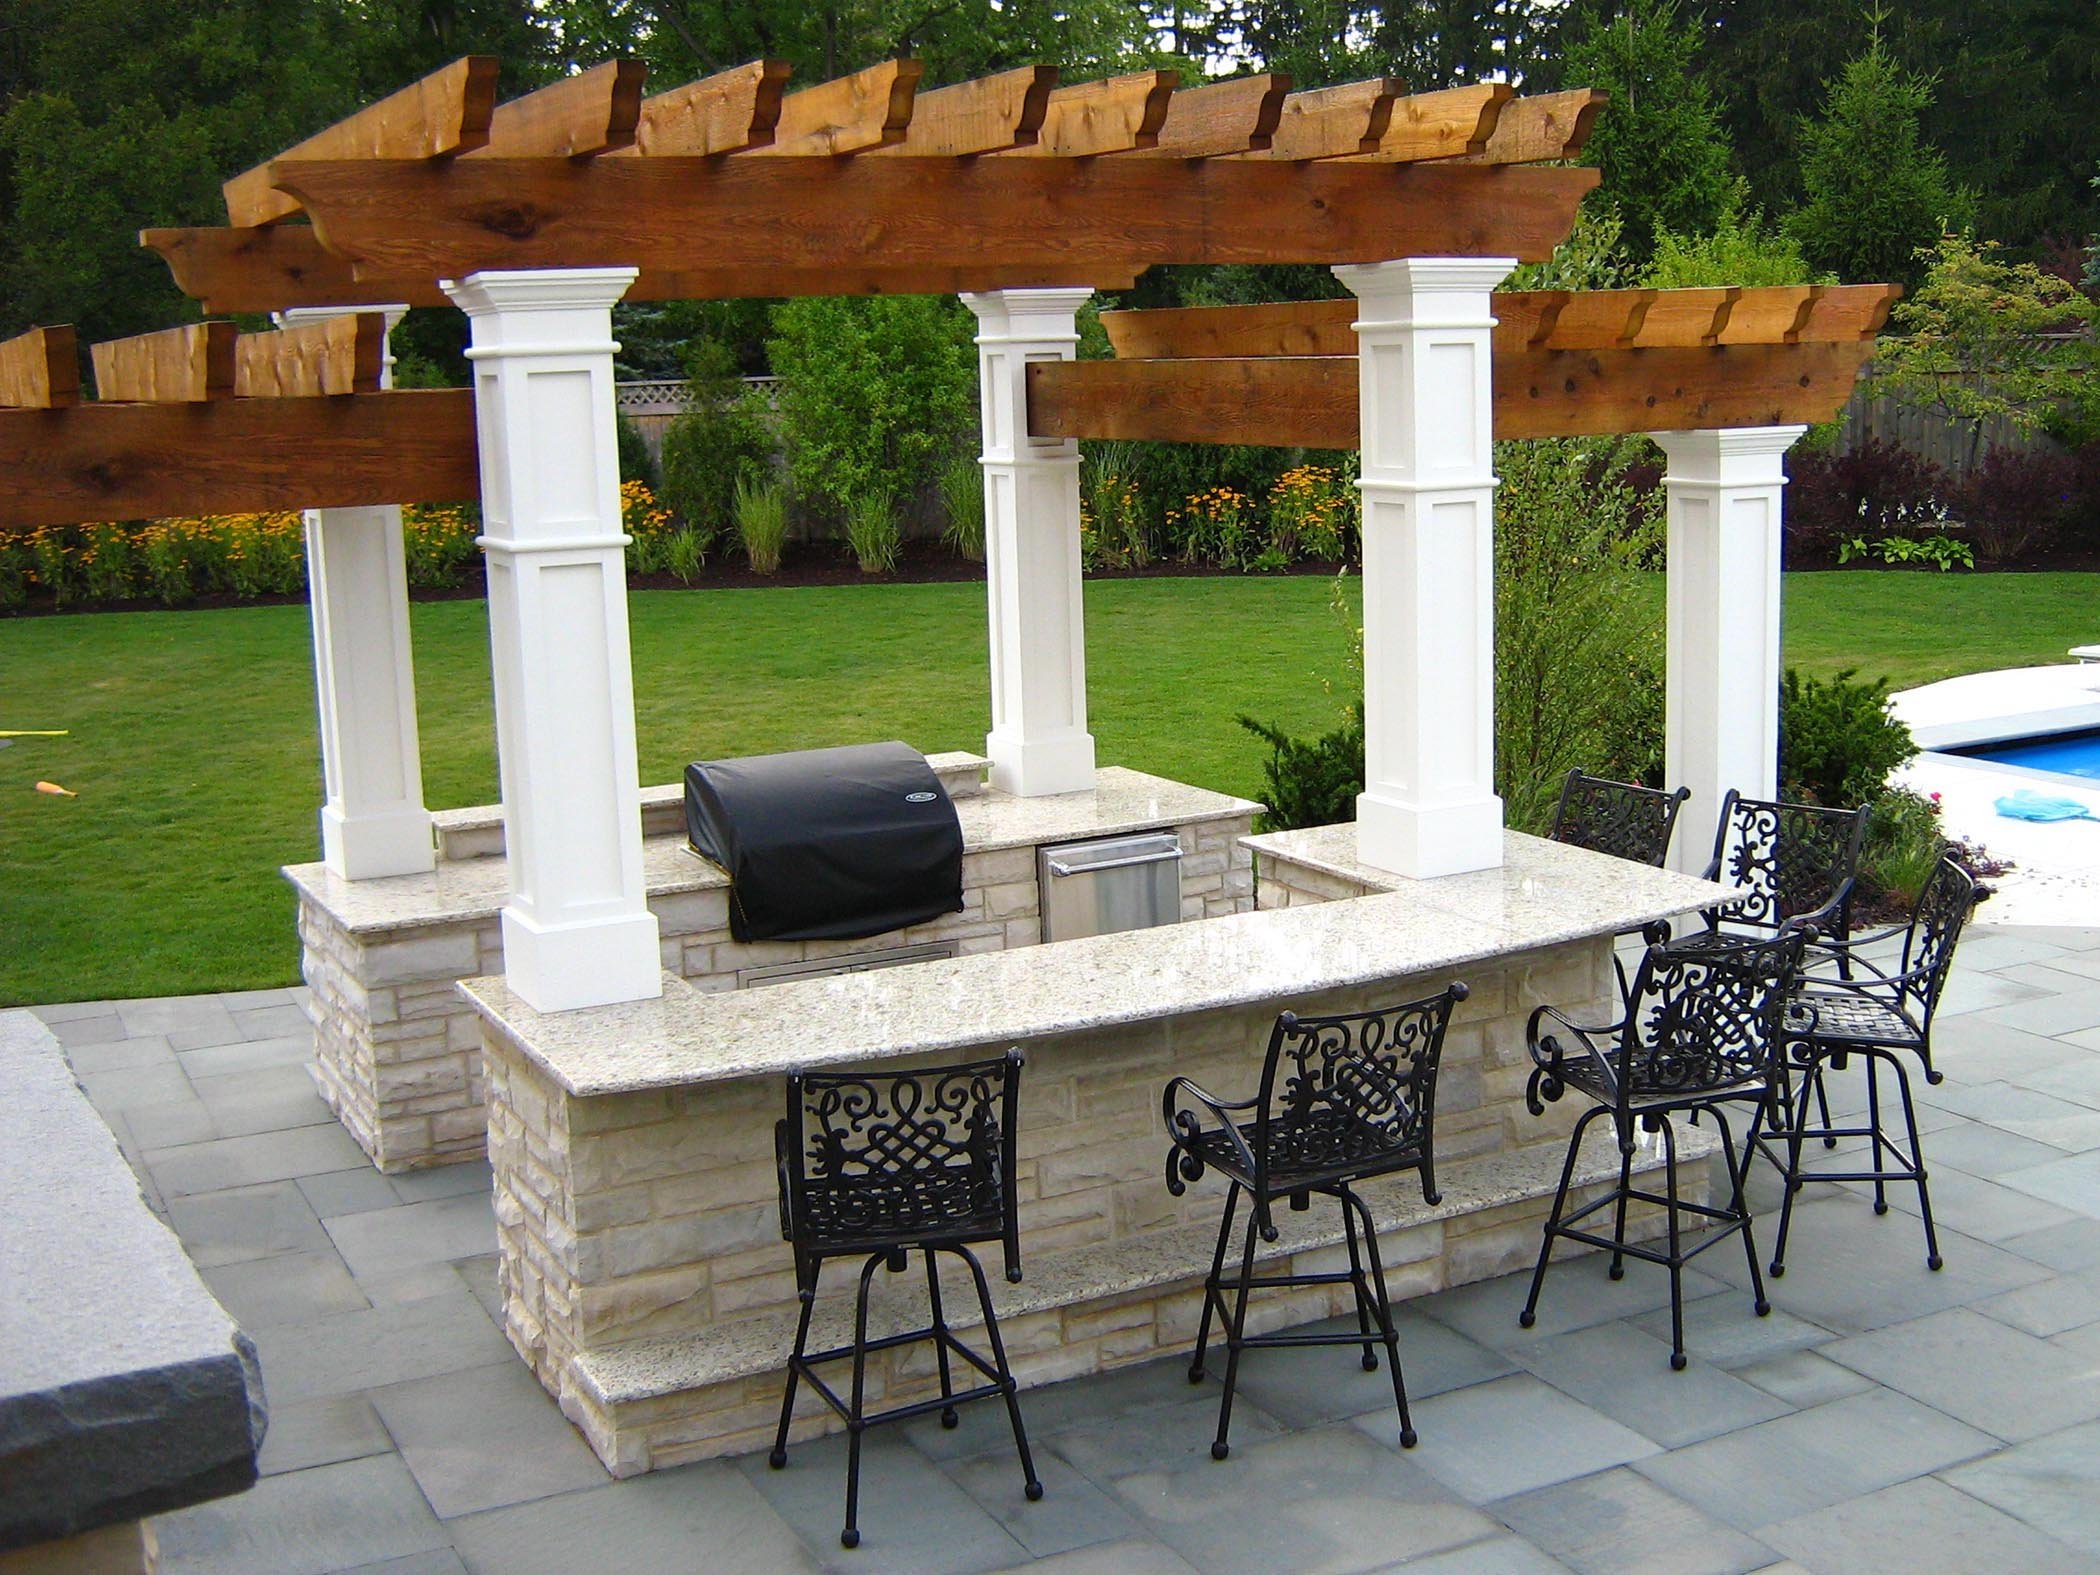 backyard pergola outdoor kitchen with paver patio next to pool